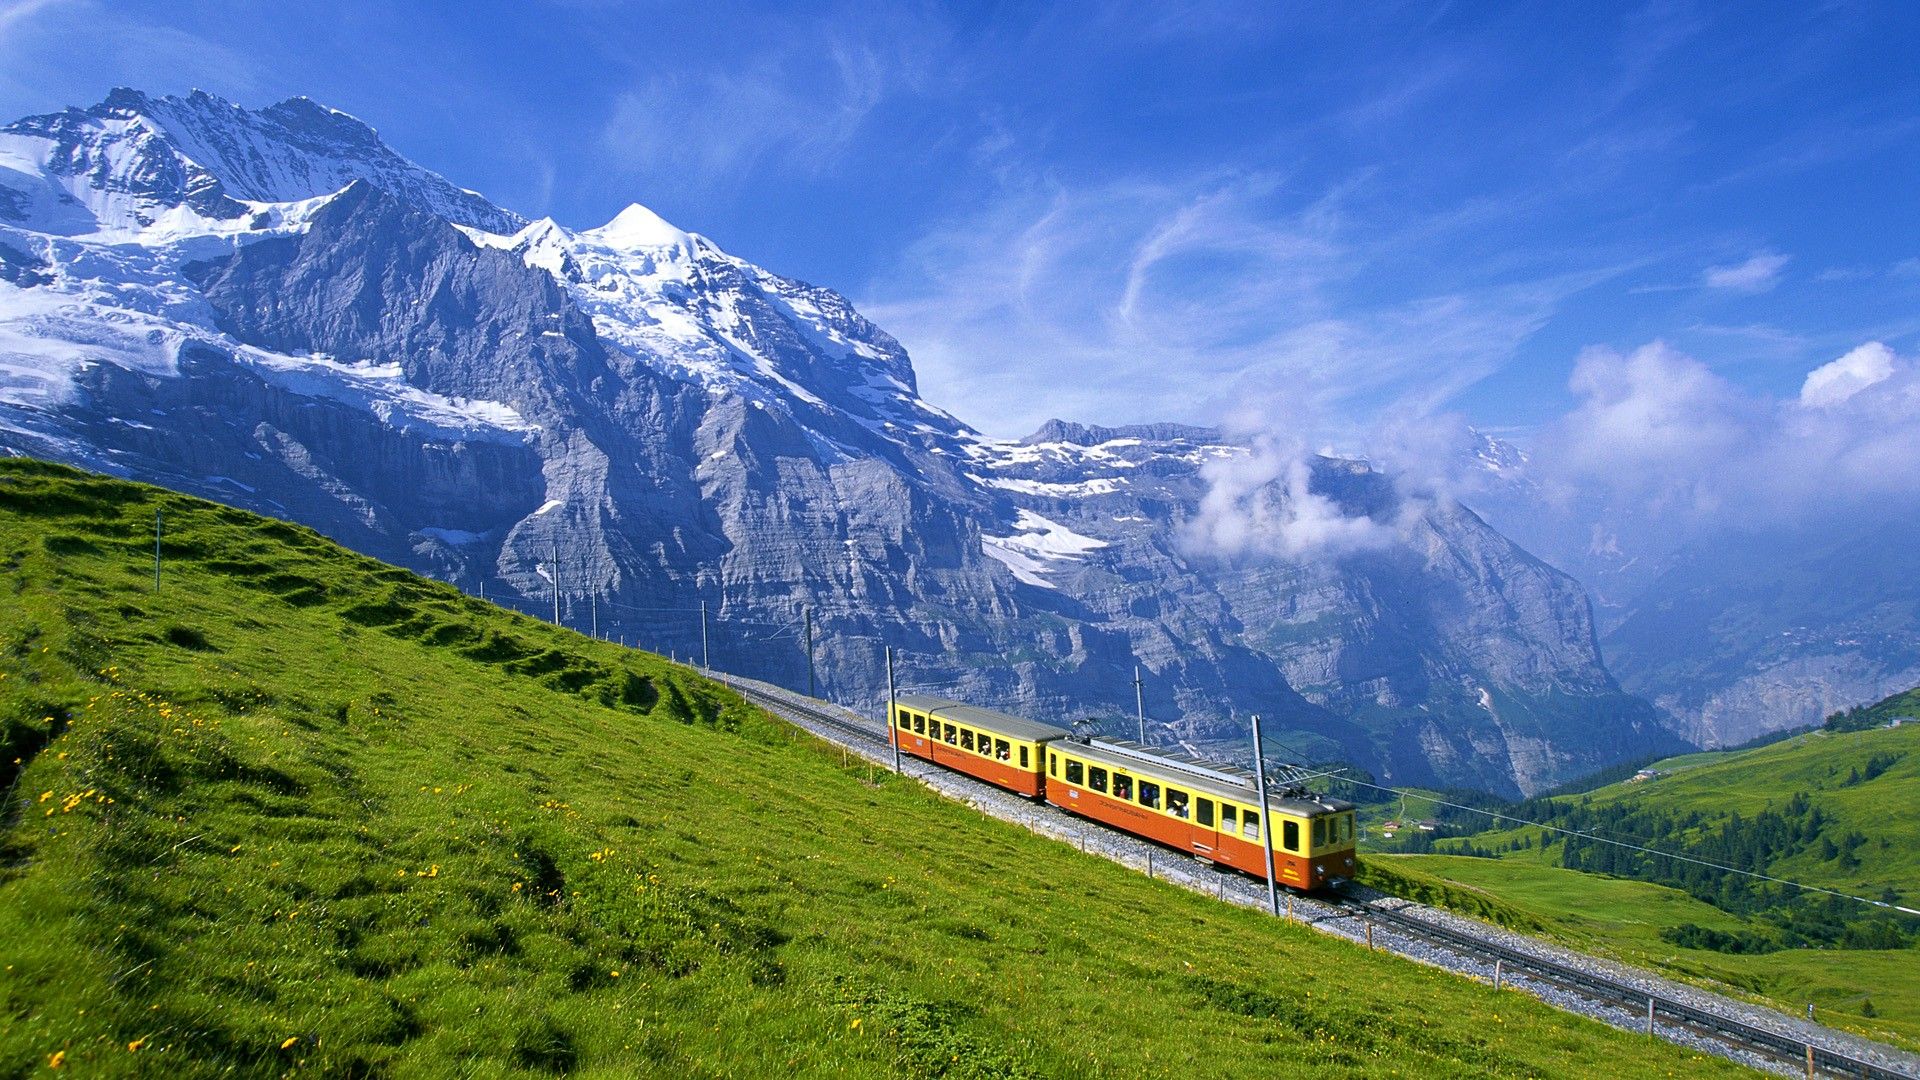 Switzerland Computer Background. Switzerland Mountains Wallpaper, Switzerland Wallpaper and Switzerland Vacation Background